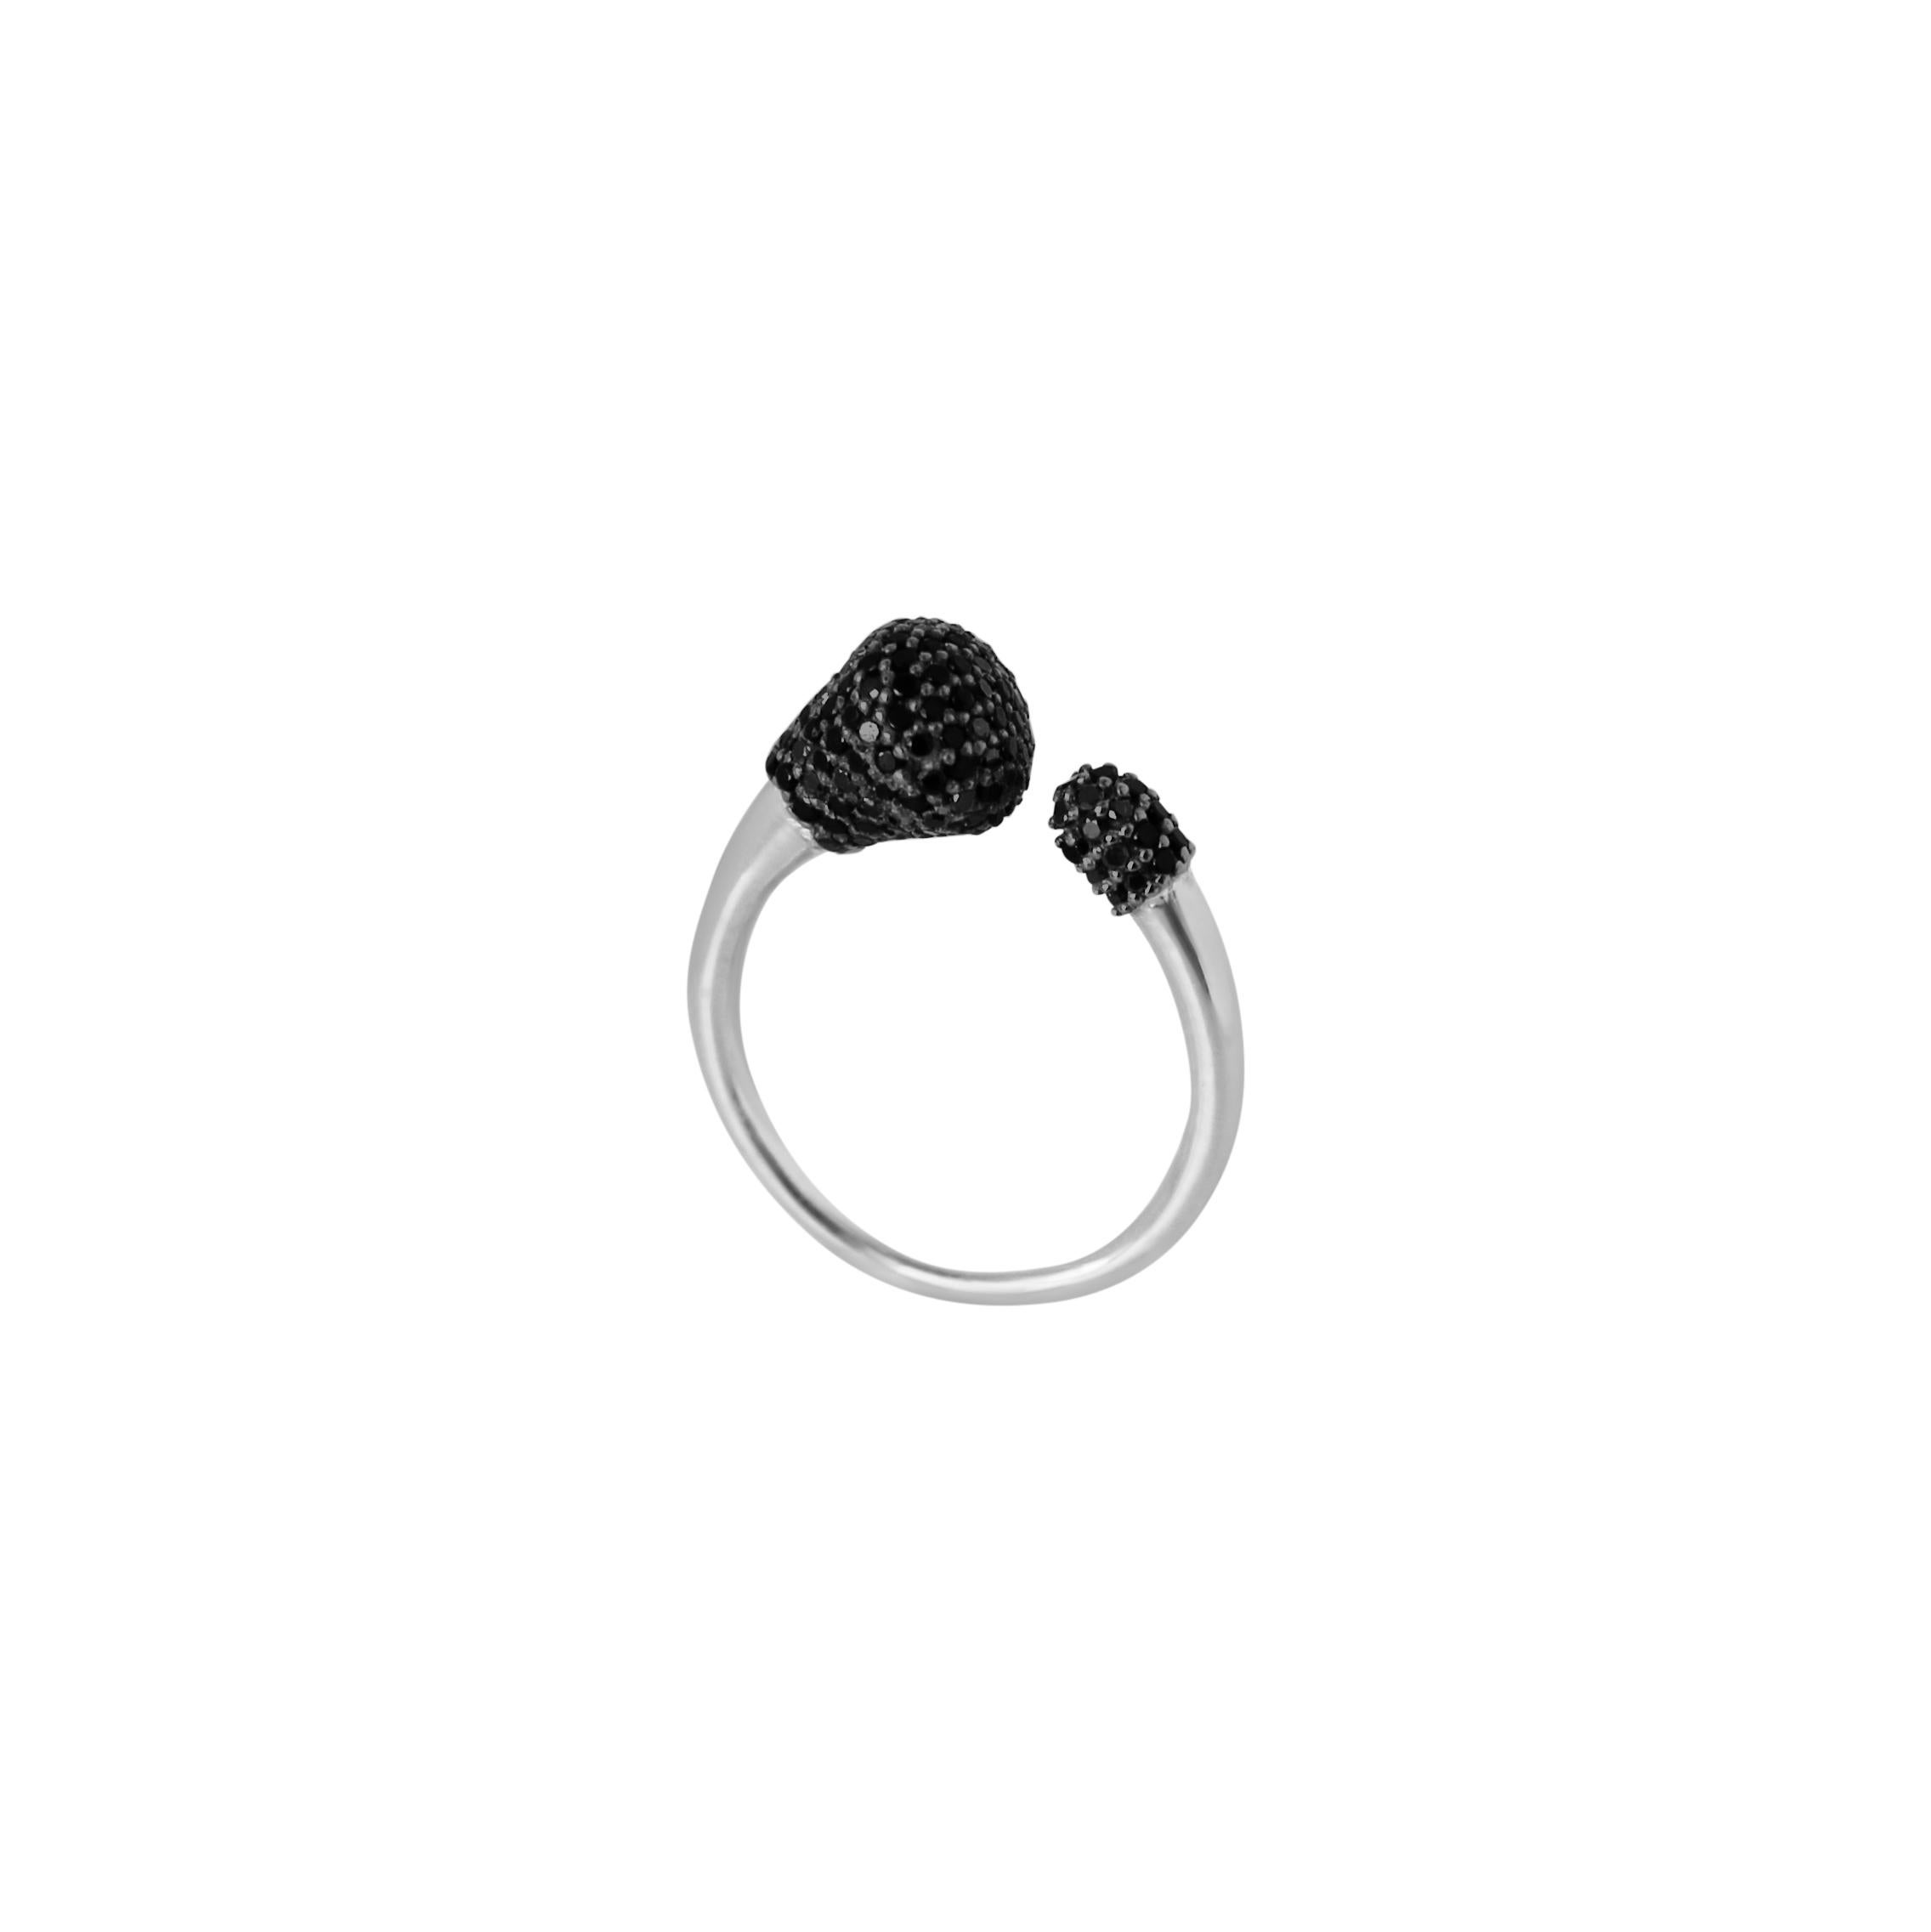 Le design de l'anneau ouvert est à la fois ludique et élégant, défini par l'audace de l'argent sterling et par la sophistication des étincelants diamants noirs sertis. Parfaites portées seules ou empilées avec plusieurs bagues de la même collection.